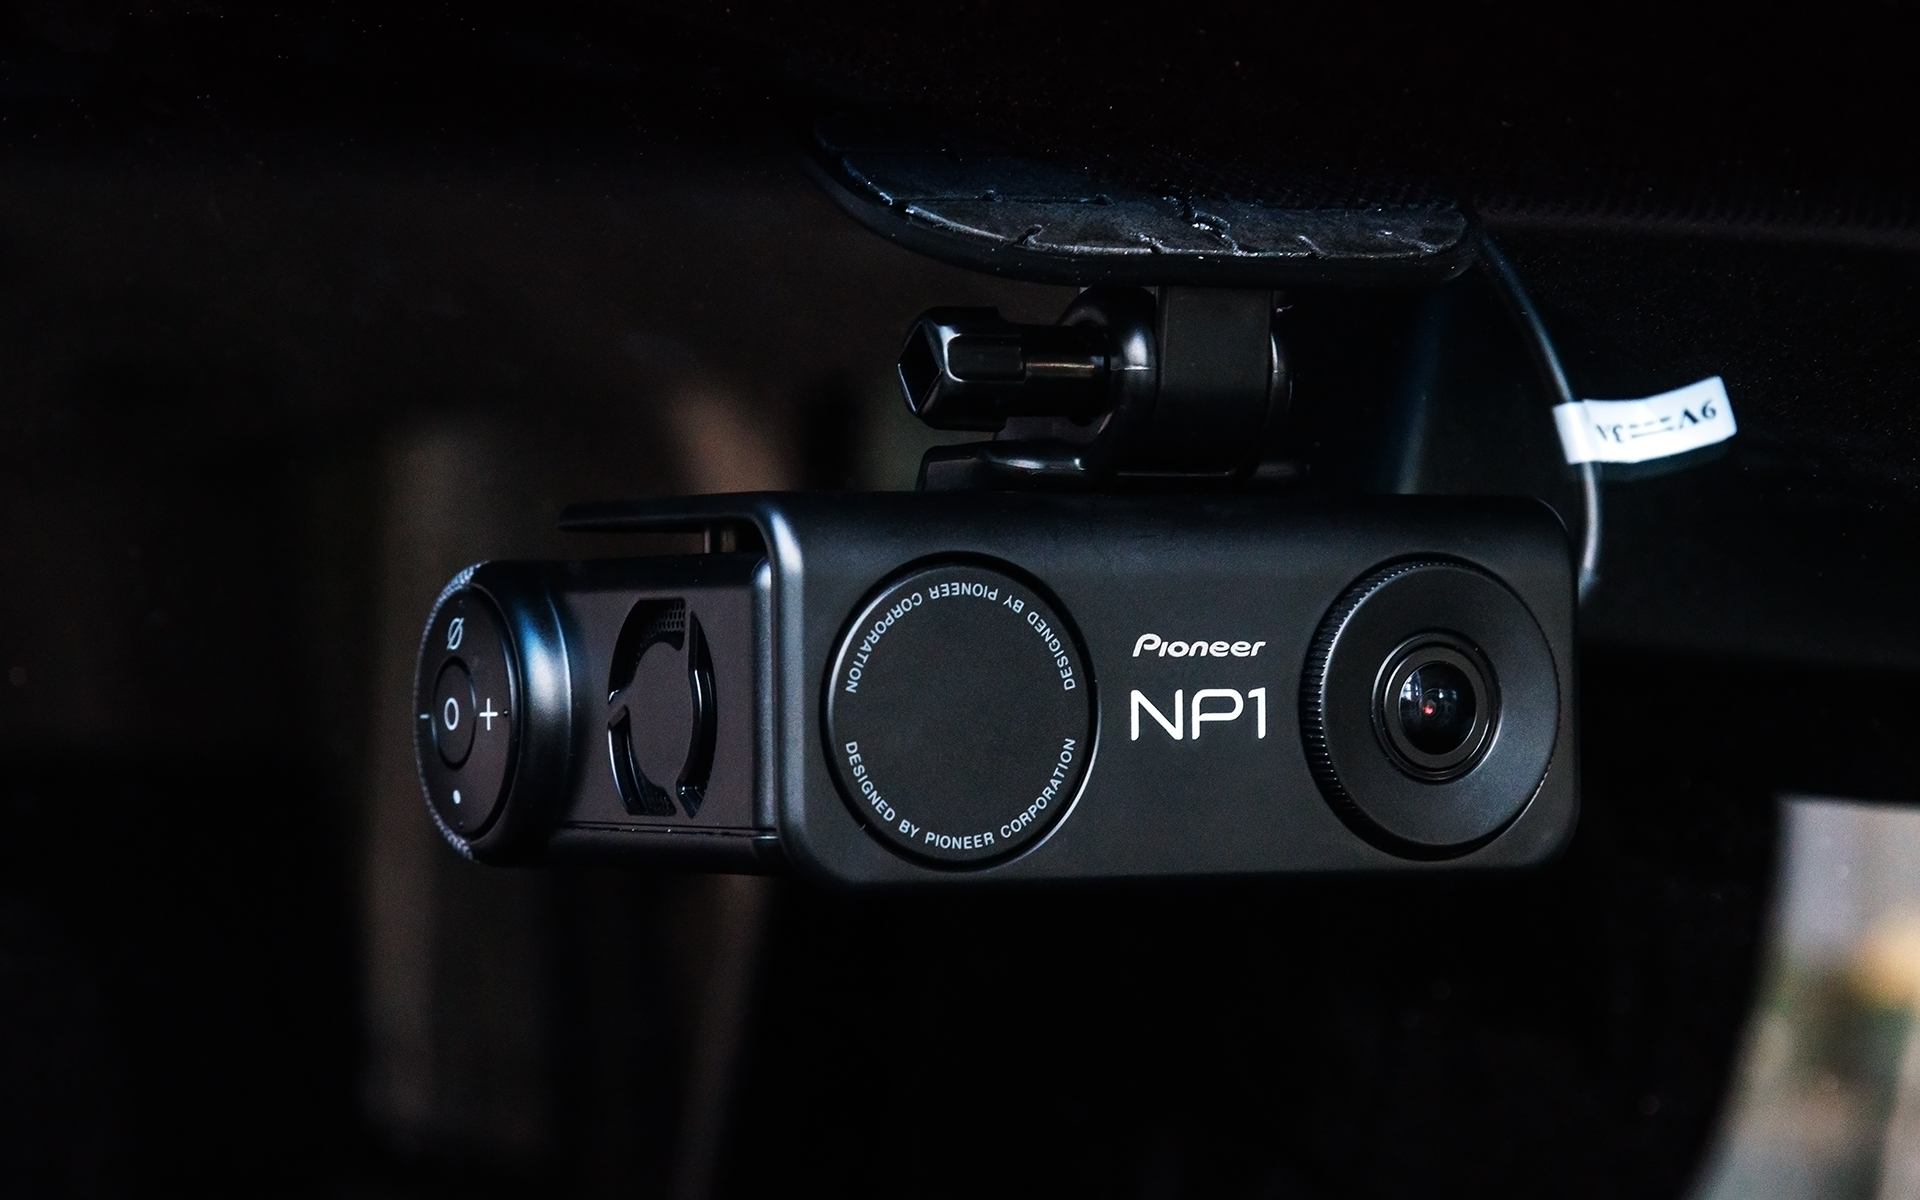 パイオニア、カーナビとドライブレコーダー機能が合体した新製品「NP1 